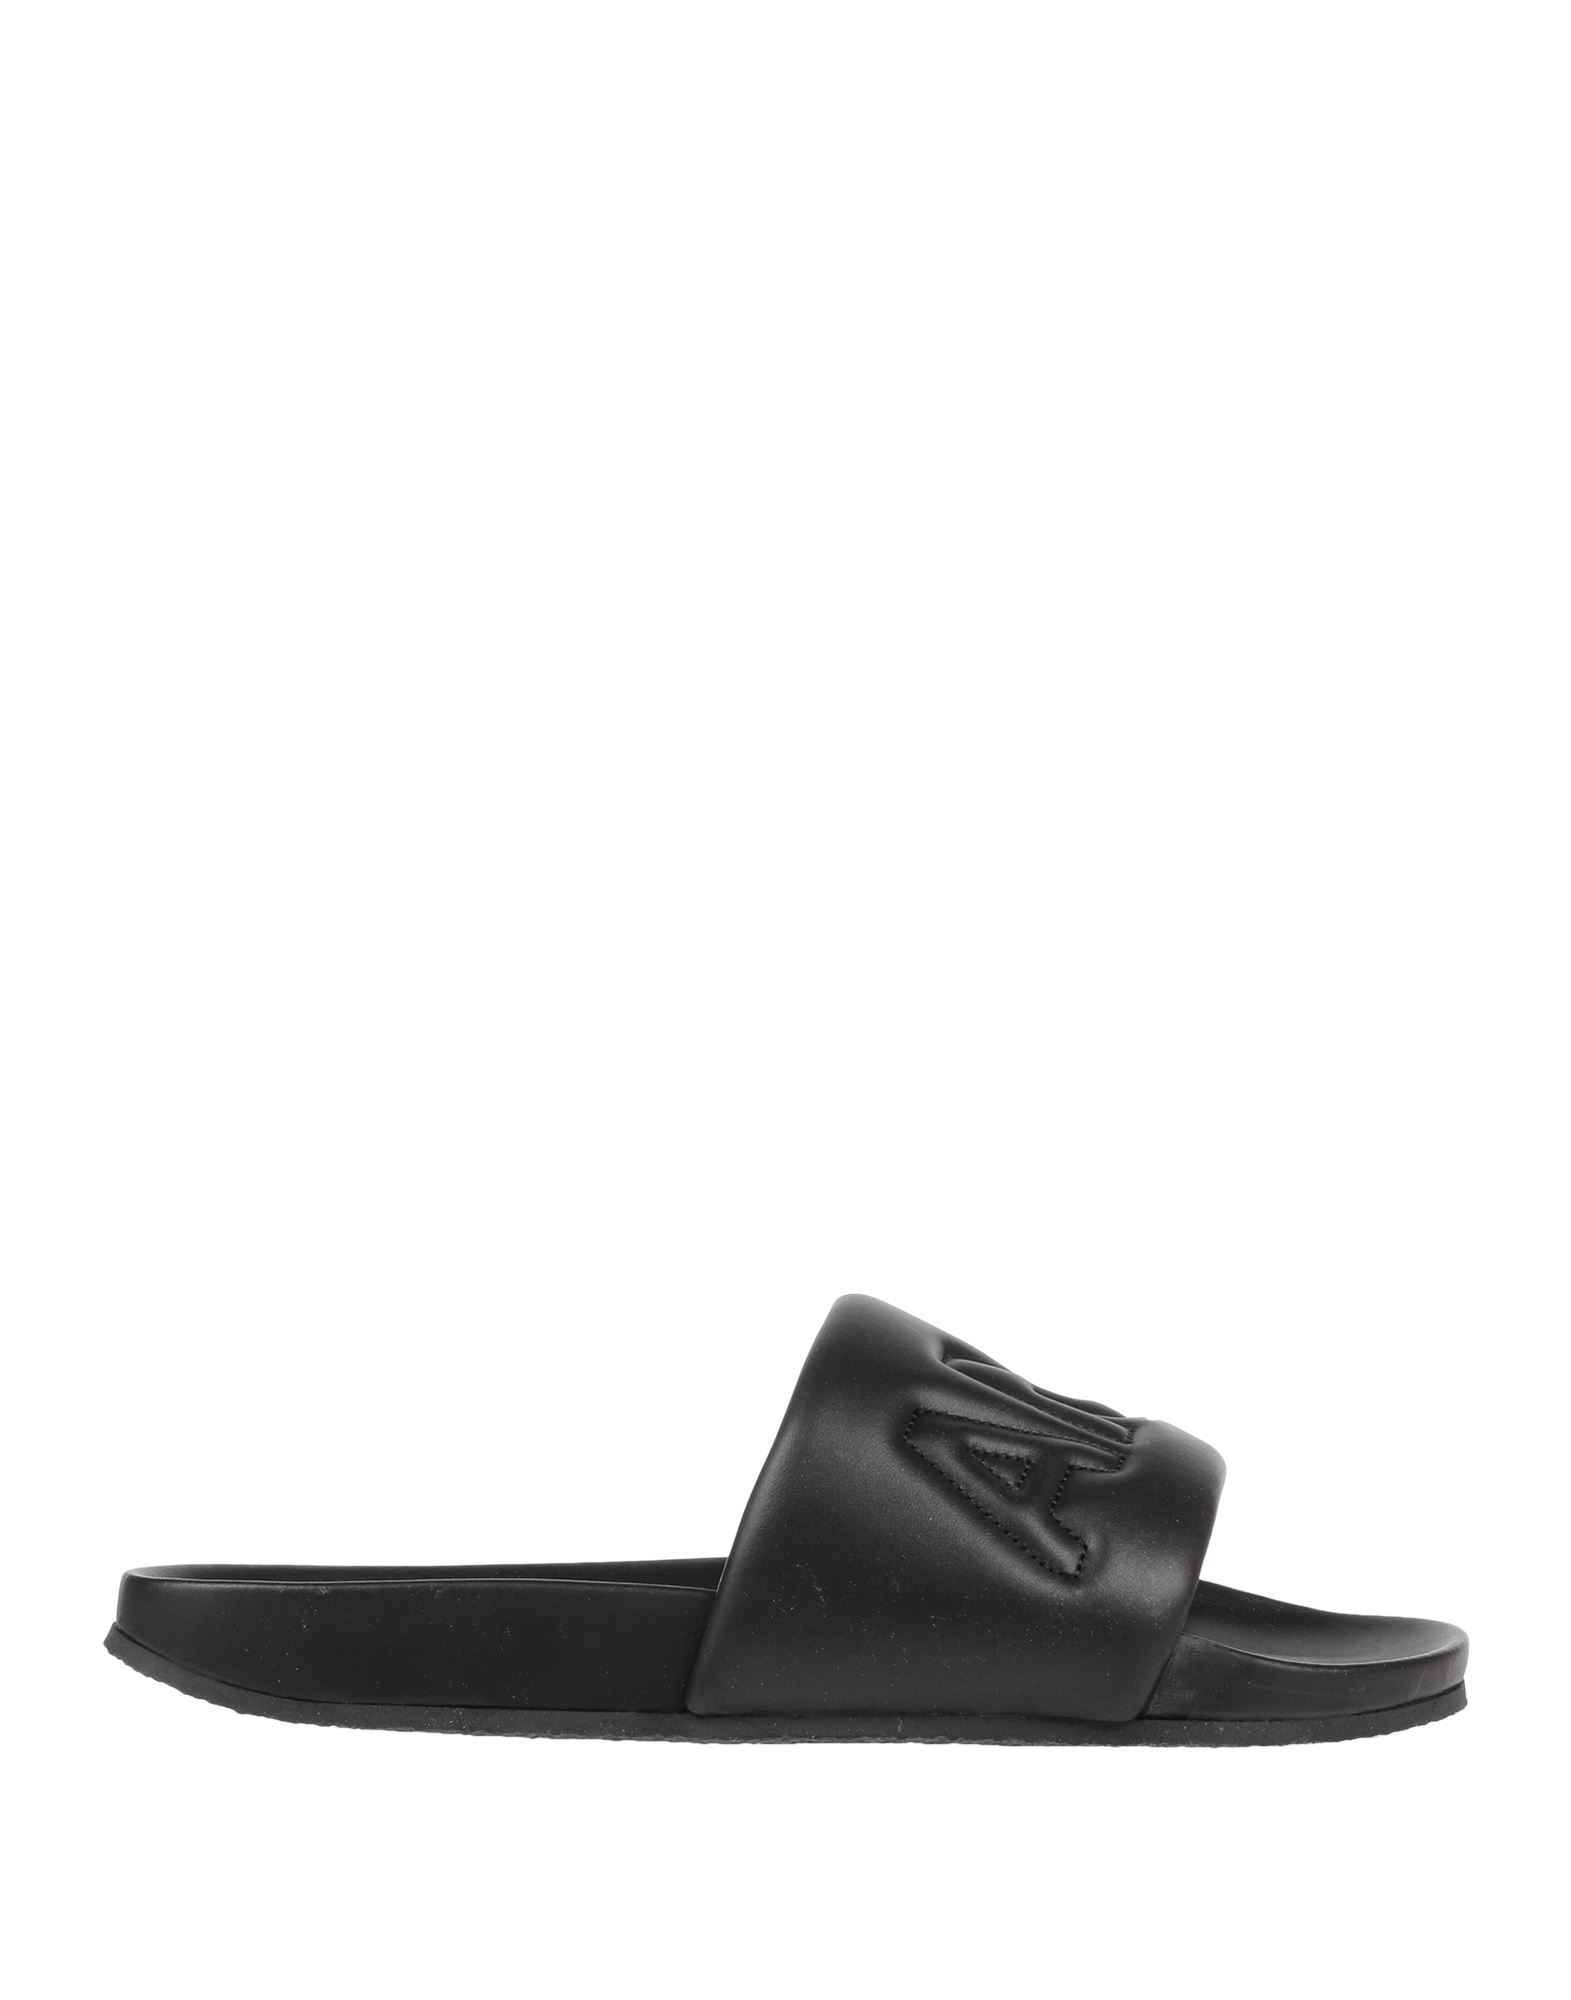 Shop Ambush Man Sandals Black Size 9 Soft Leather